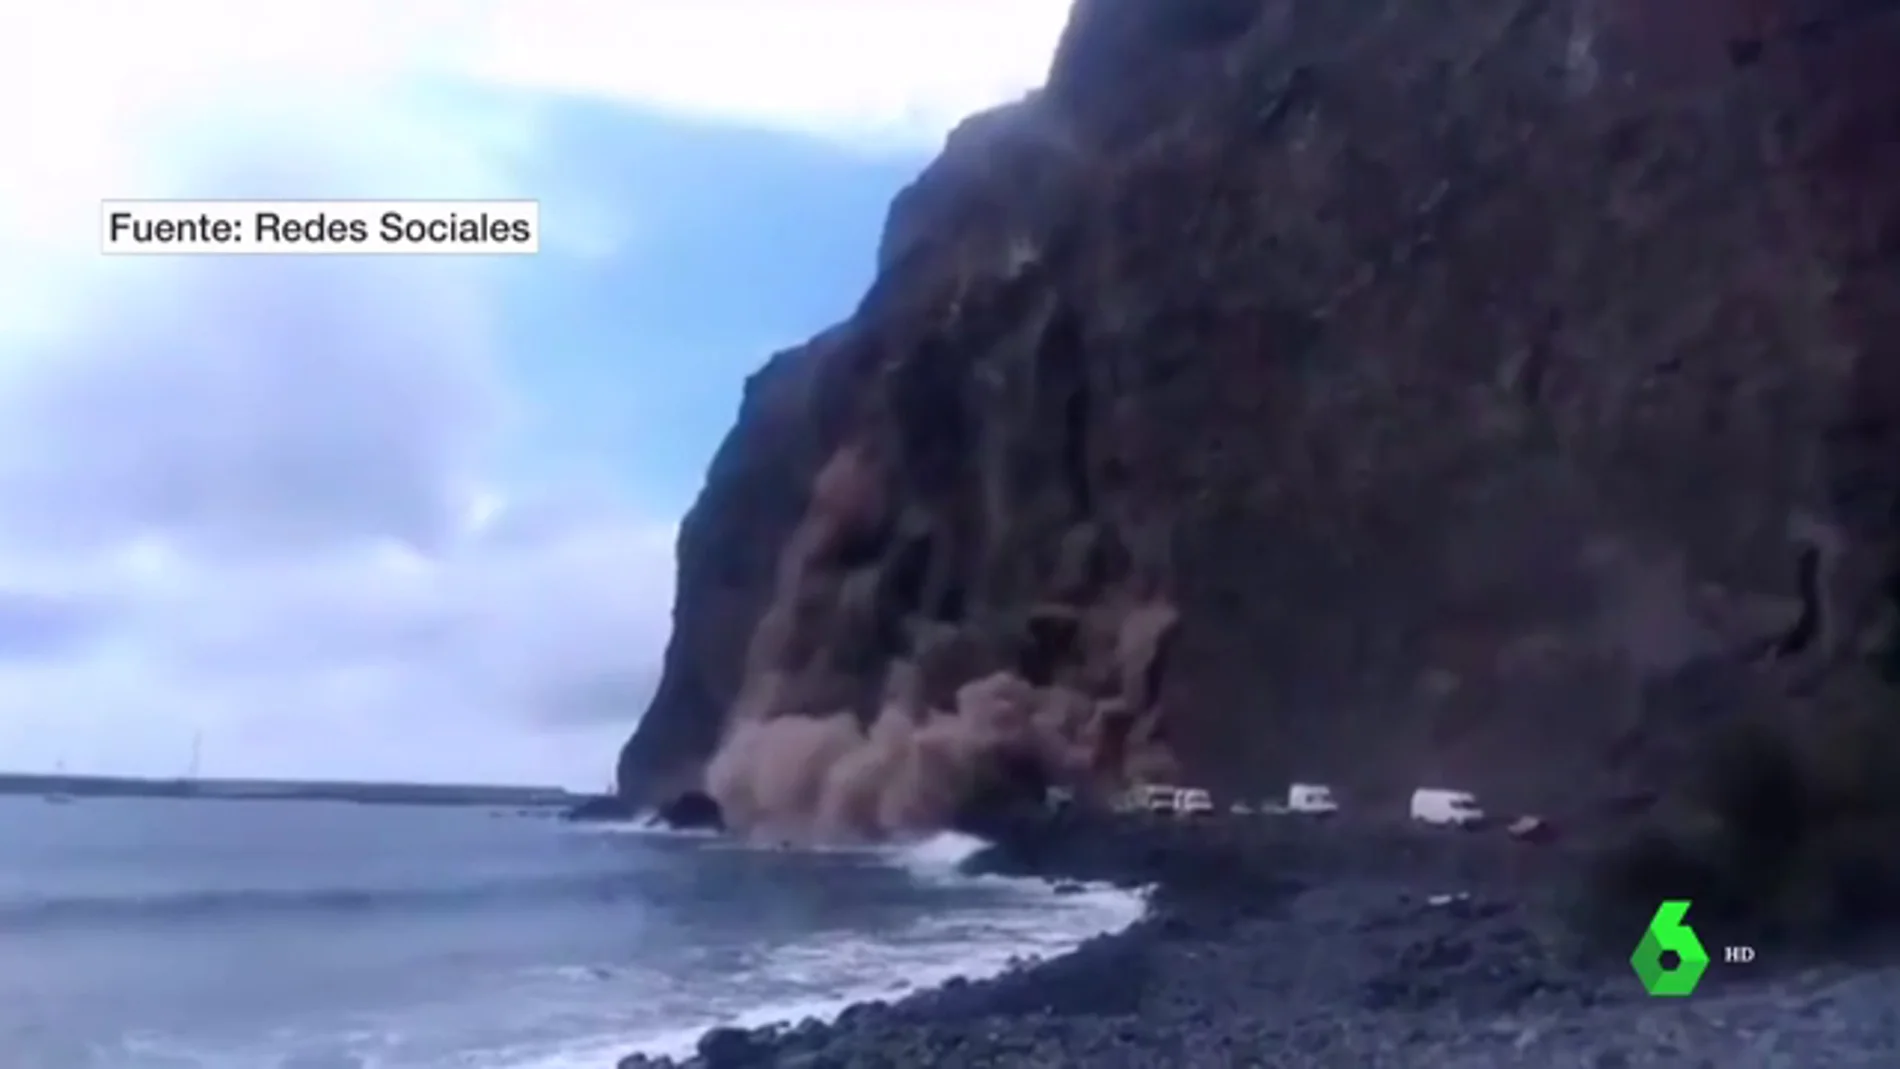 Imágenes del brutal derrumbe en un acantilado en La Gomera: cinco personas han sido evacuadas tras el incidente